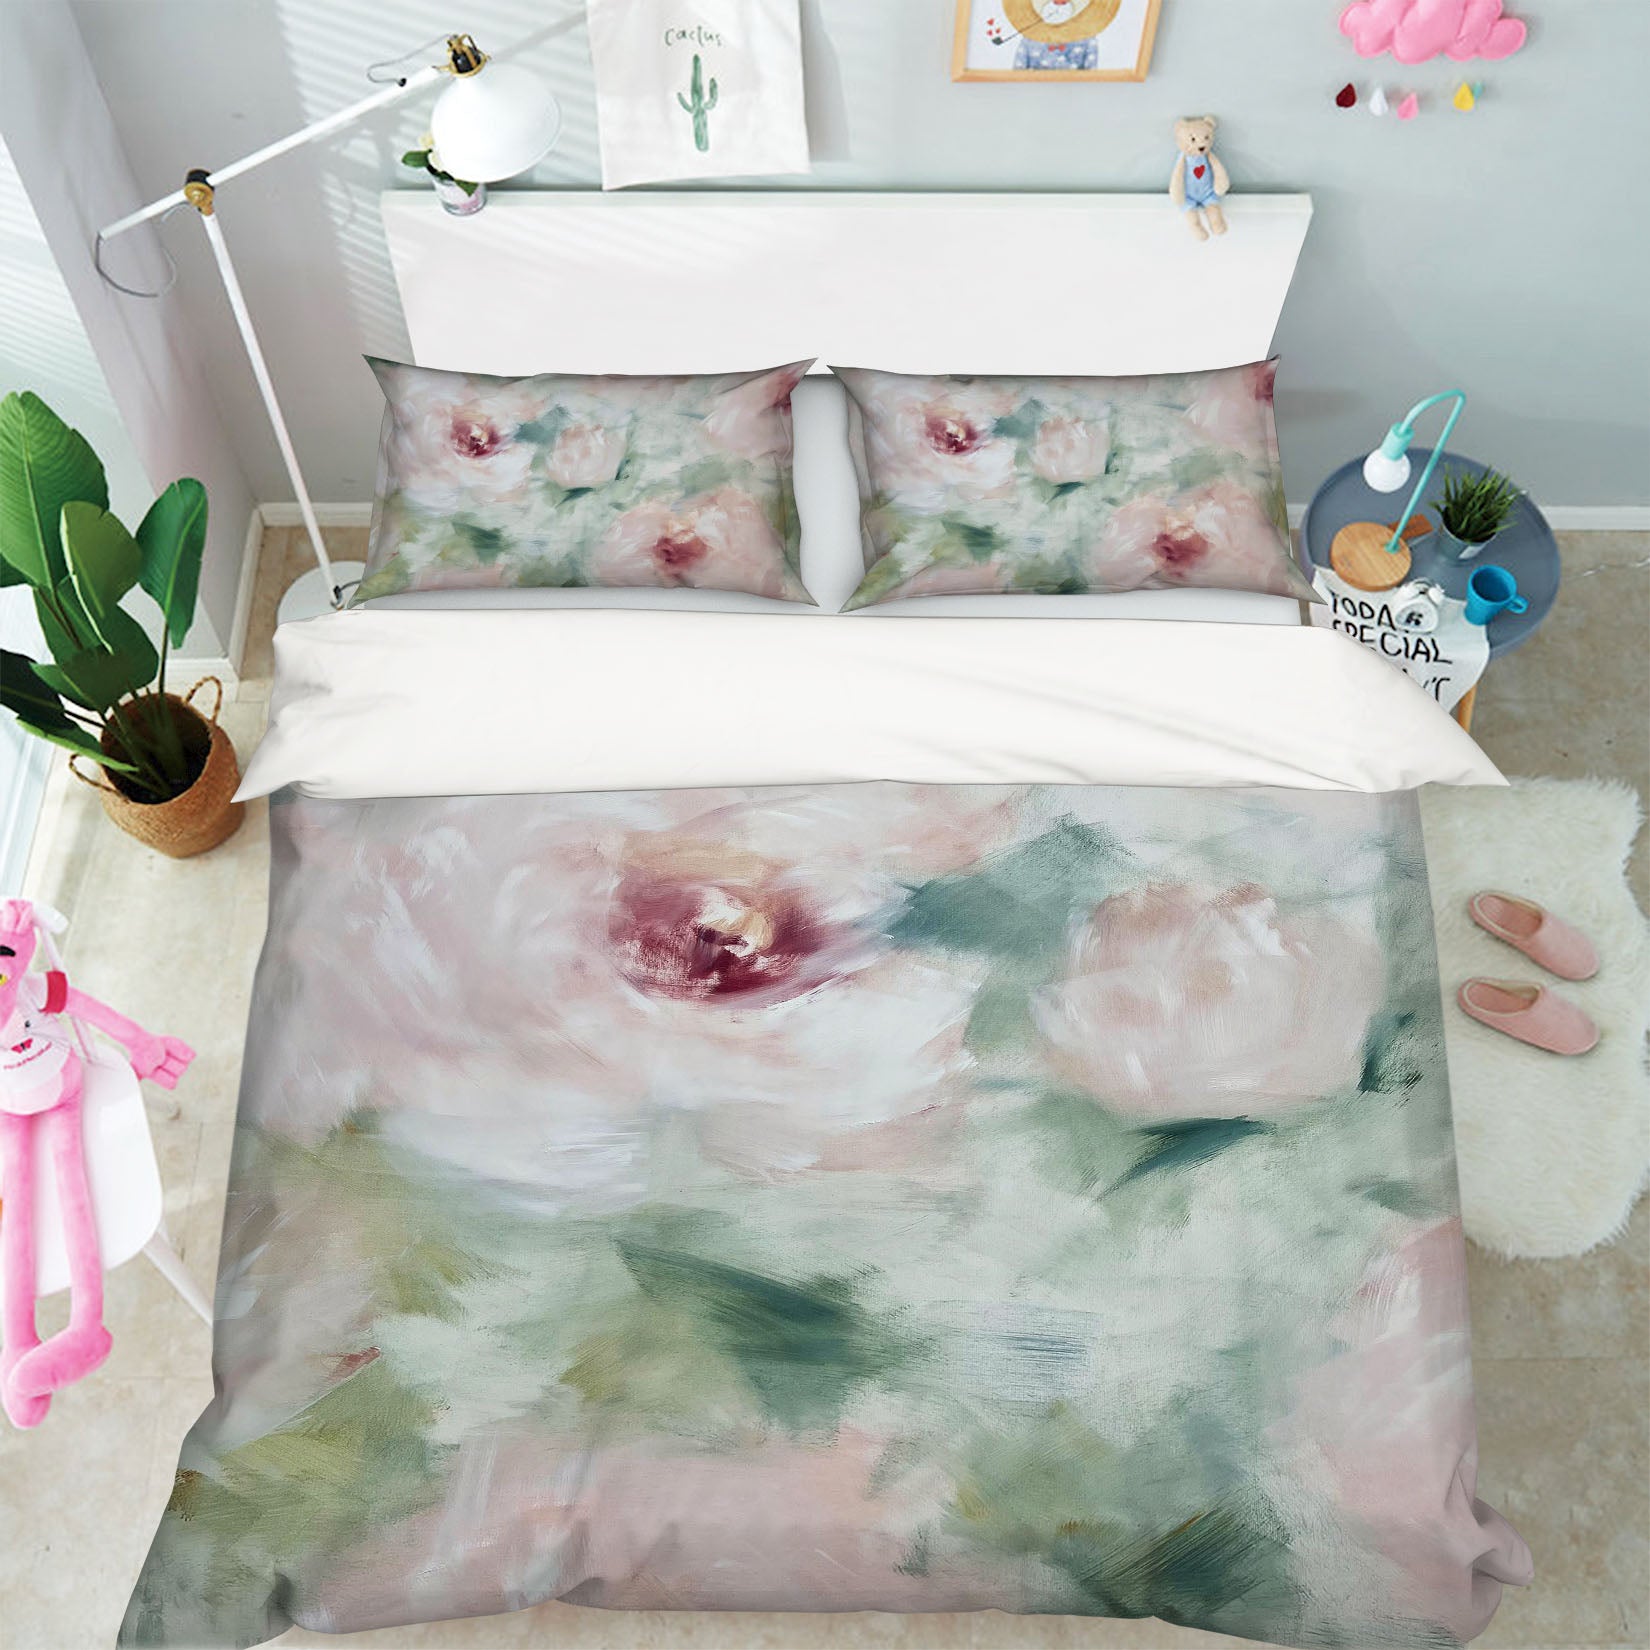 3D Pink Flower 3136 Skromova Marina Bedding Bed Pillowcases Quilt Cover Duvet Cover